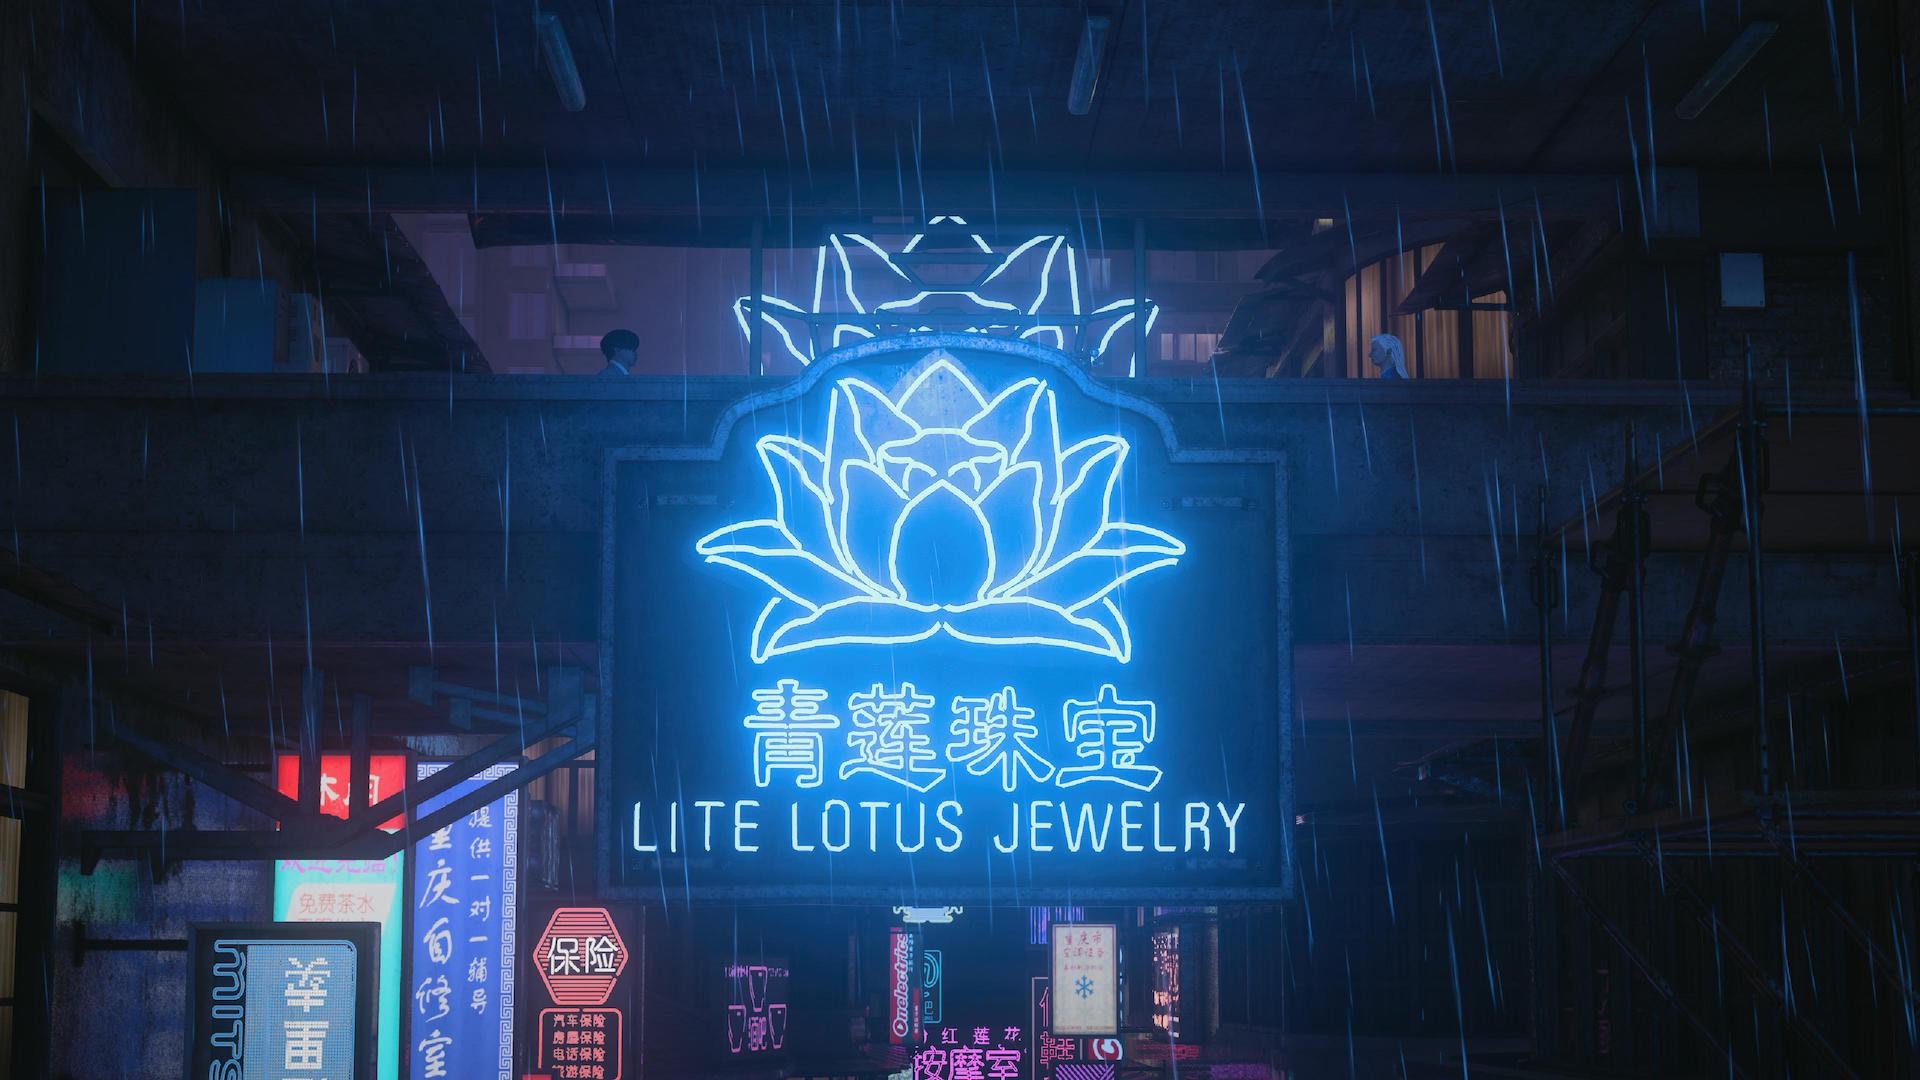 Lite lotus